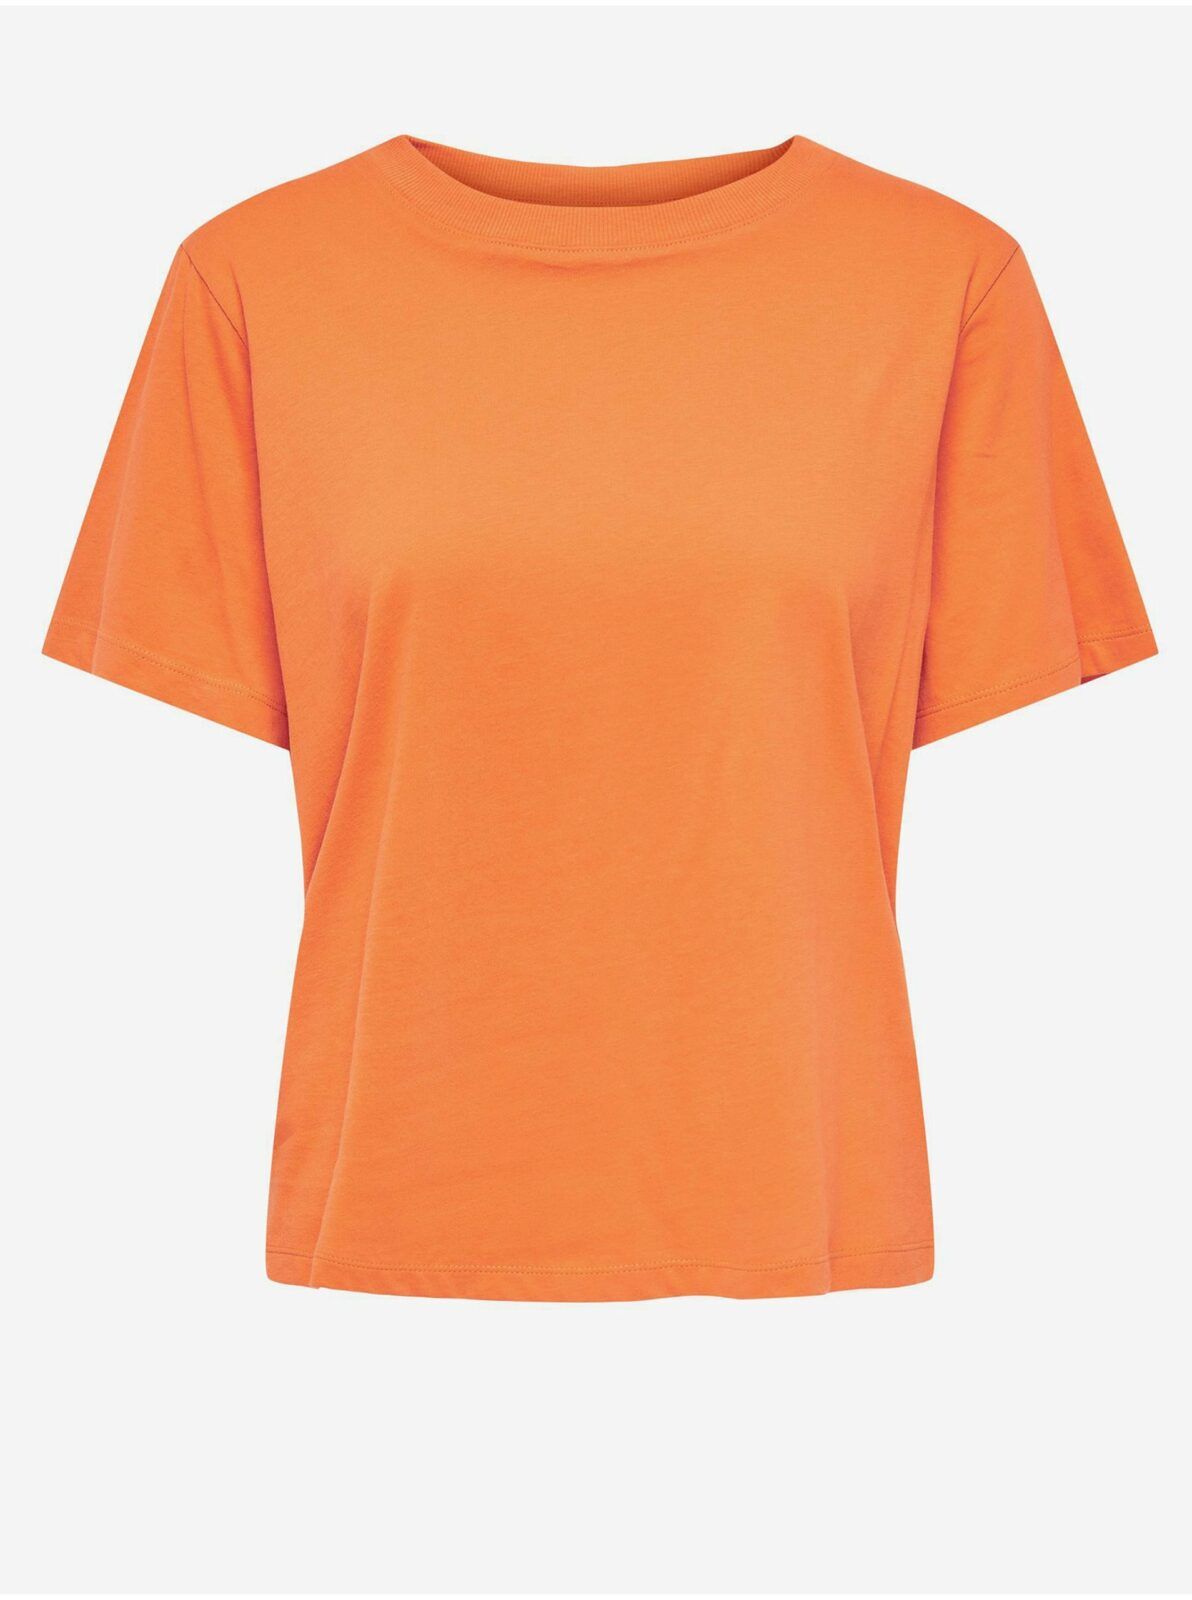 Oranžové dámské tričko s potiskem na zádech